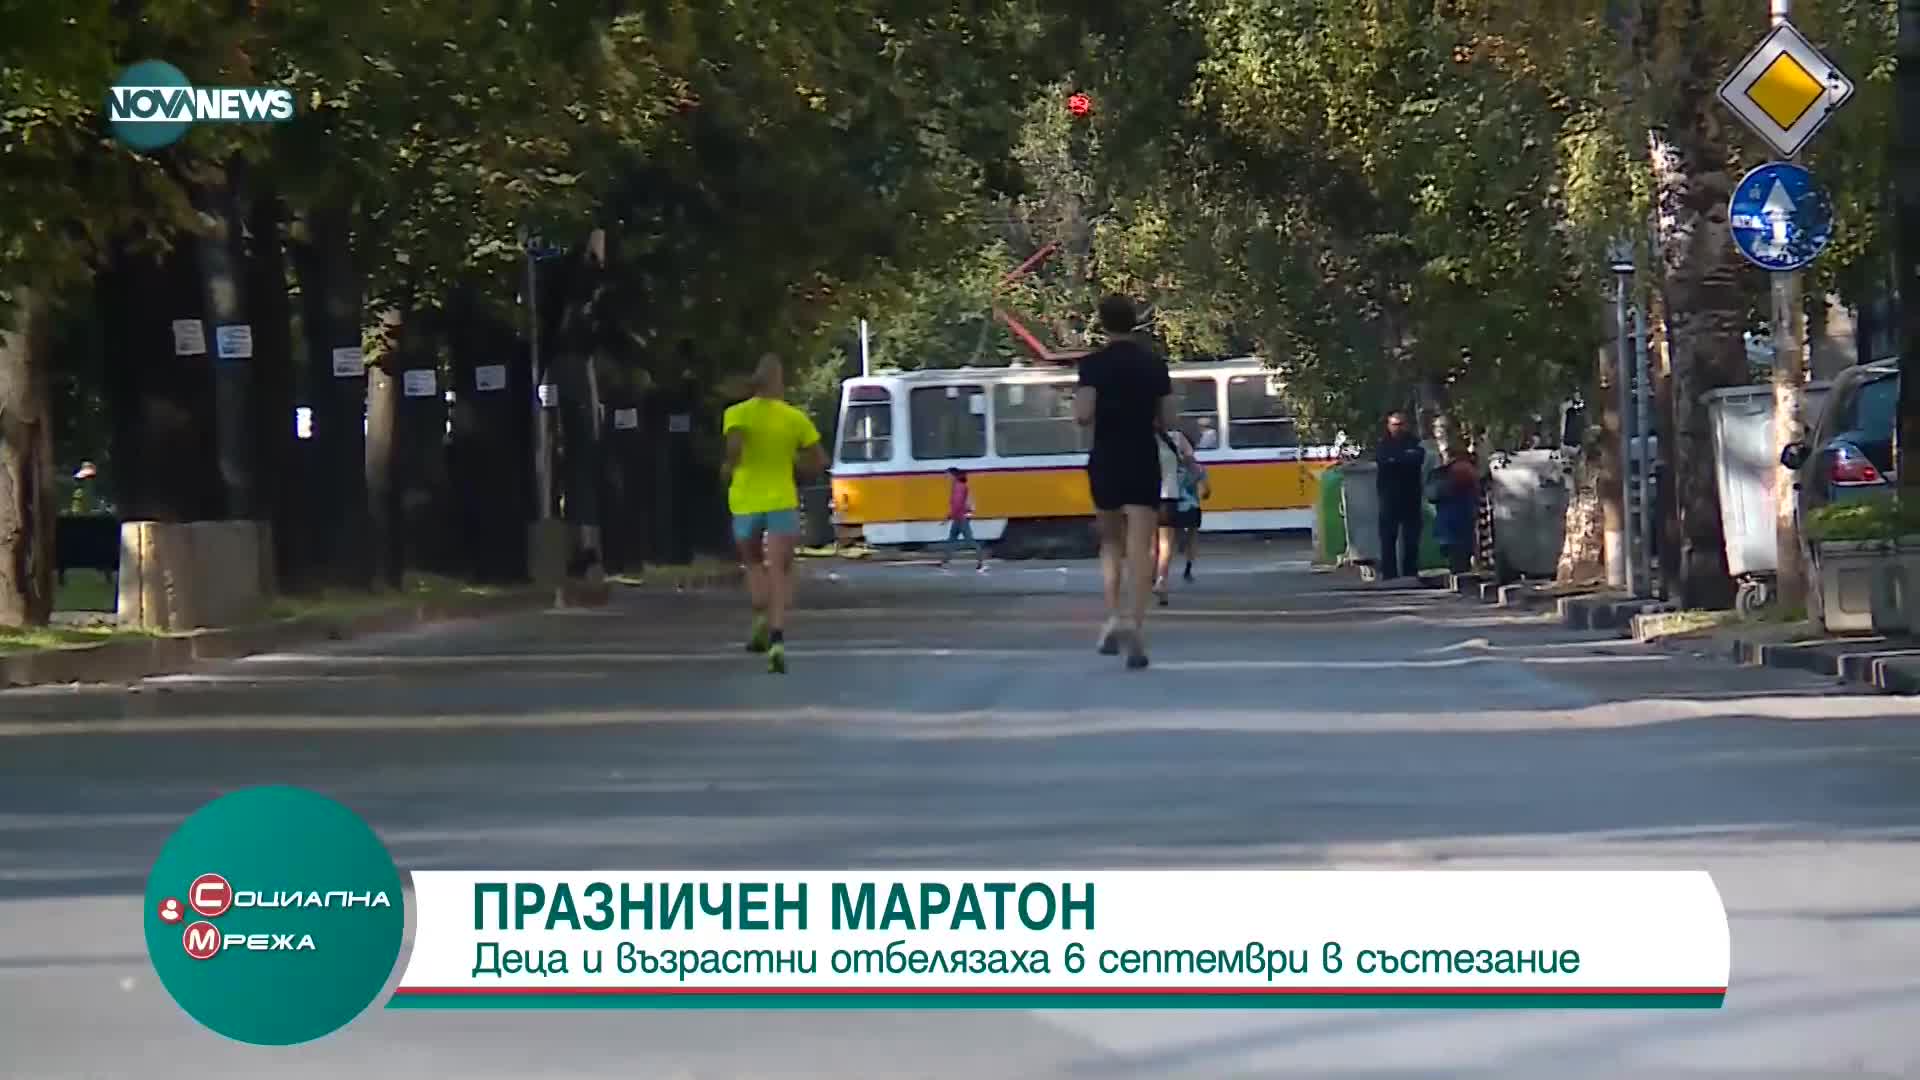 Деца и възрастни отбелязаха 6 септември с празничен маратон